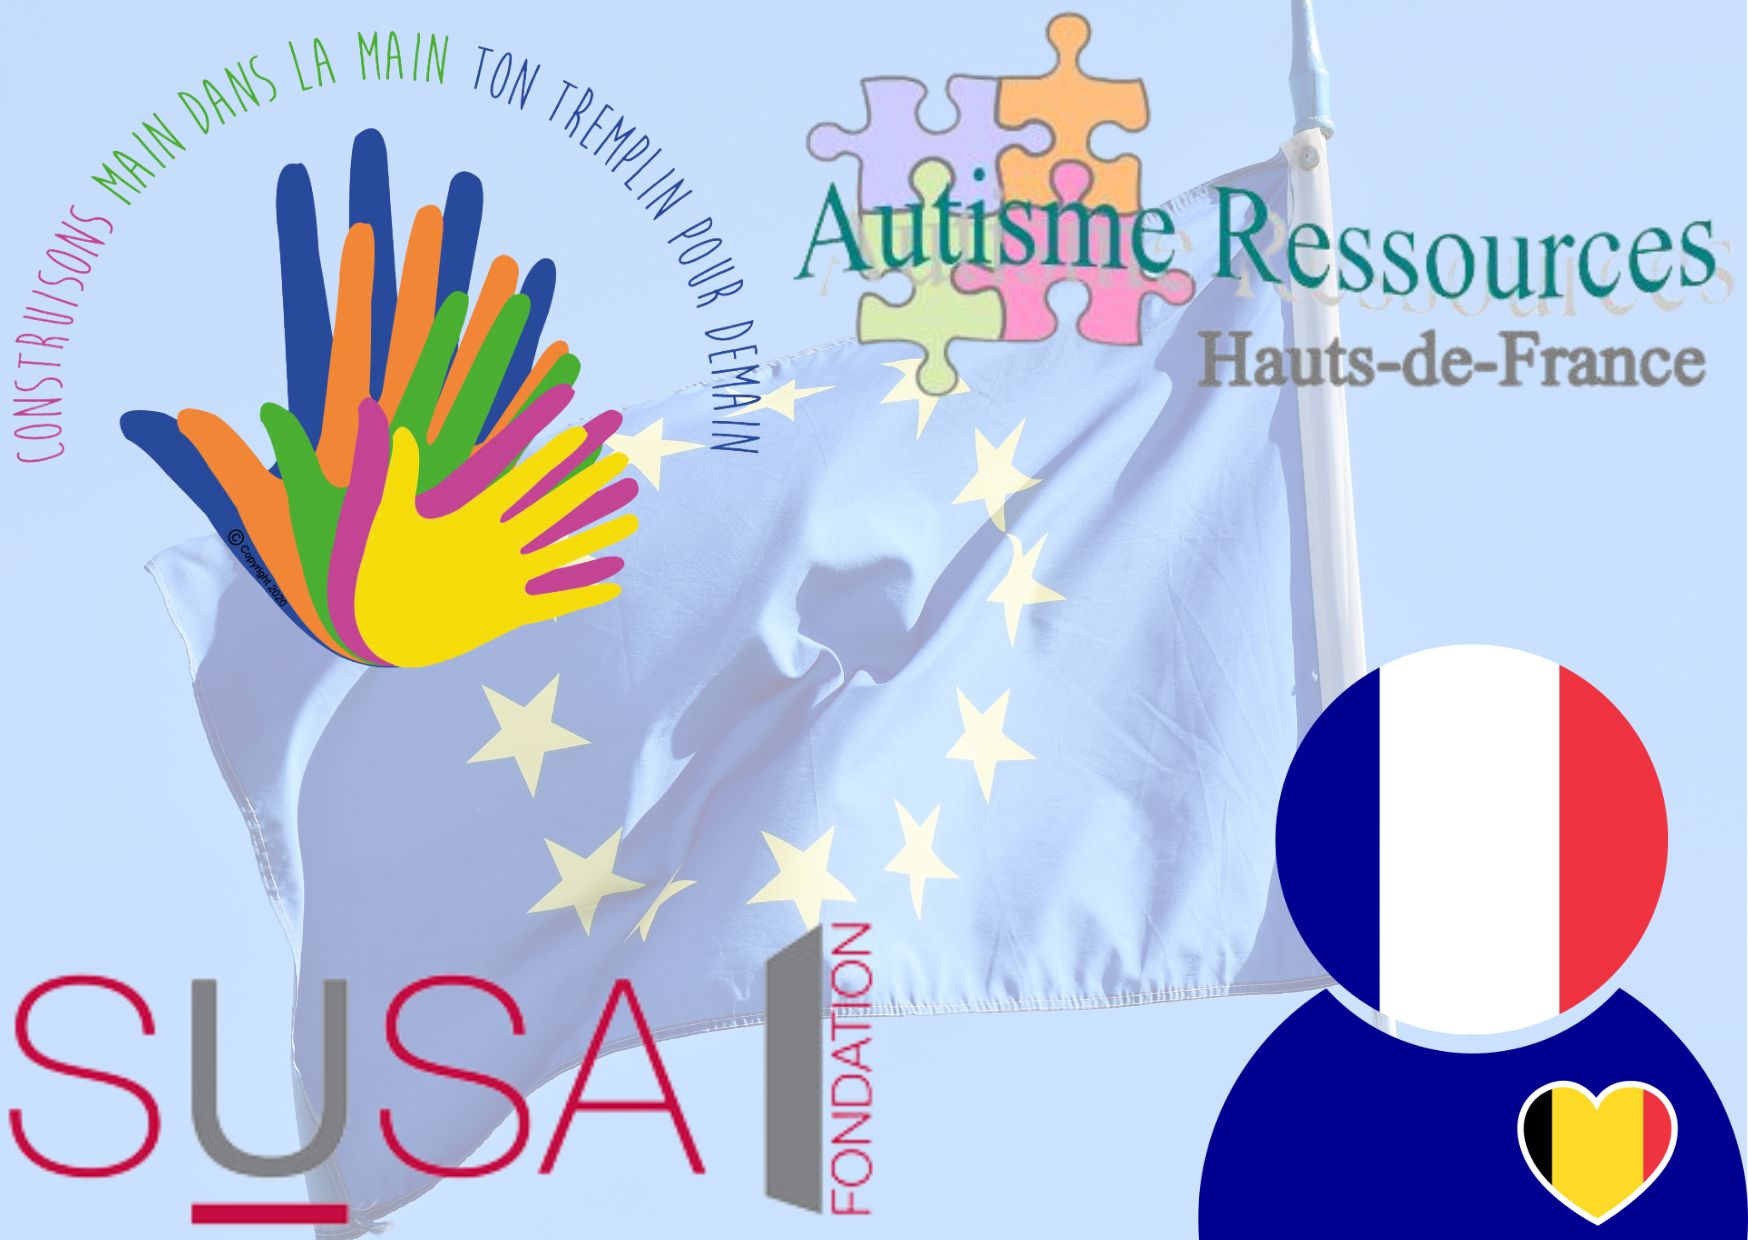 Rencontre européenne des initiatives inclusives : logos Autisme ressources Hauts-de France, écoles Sainte-Gertrude, SUSA, AFrESHEB sur fond de ciel bleu avec drapeau européen